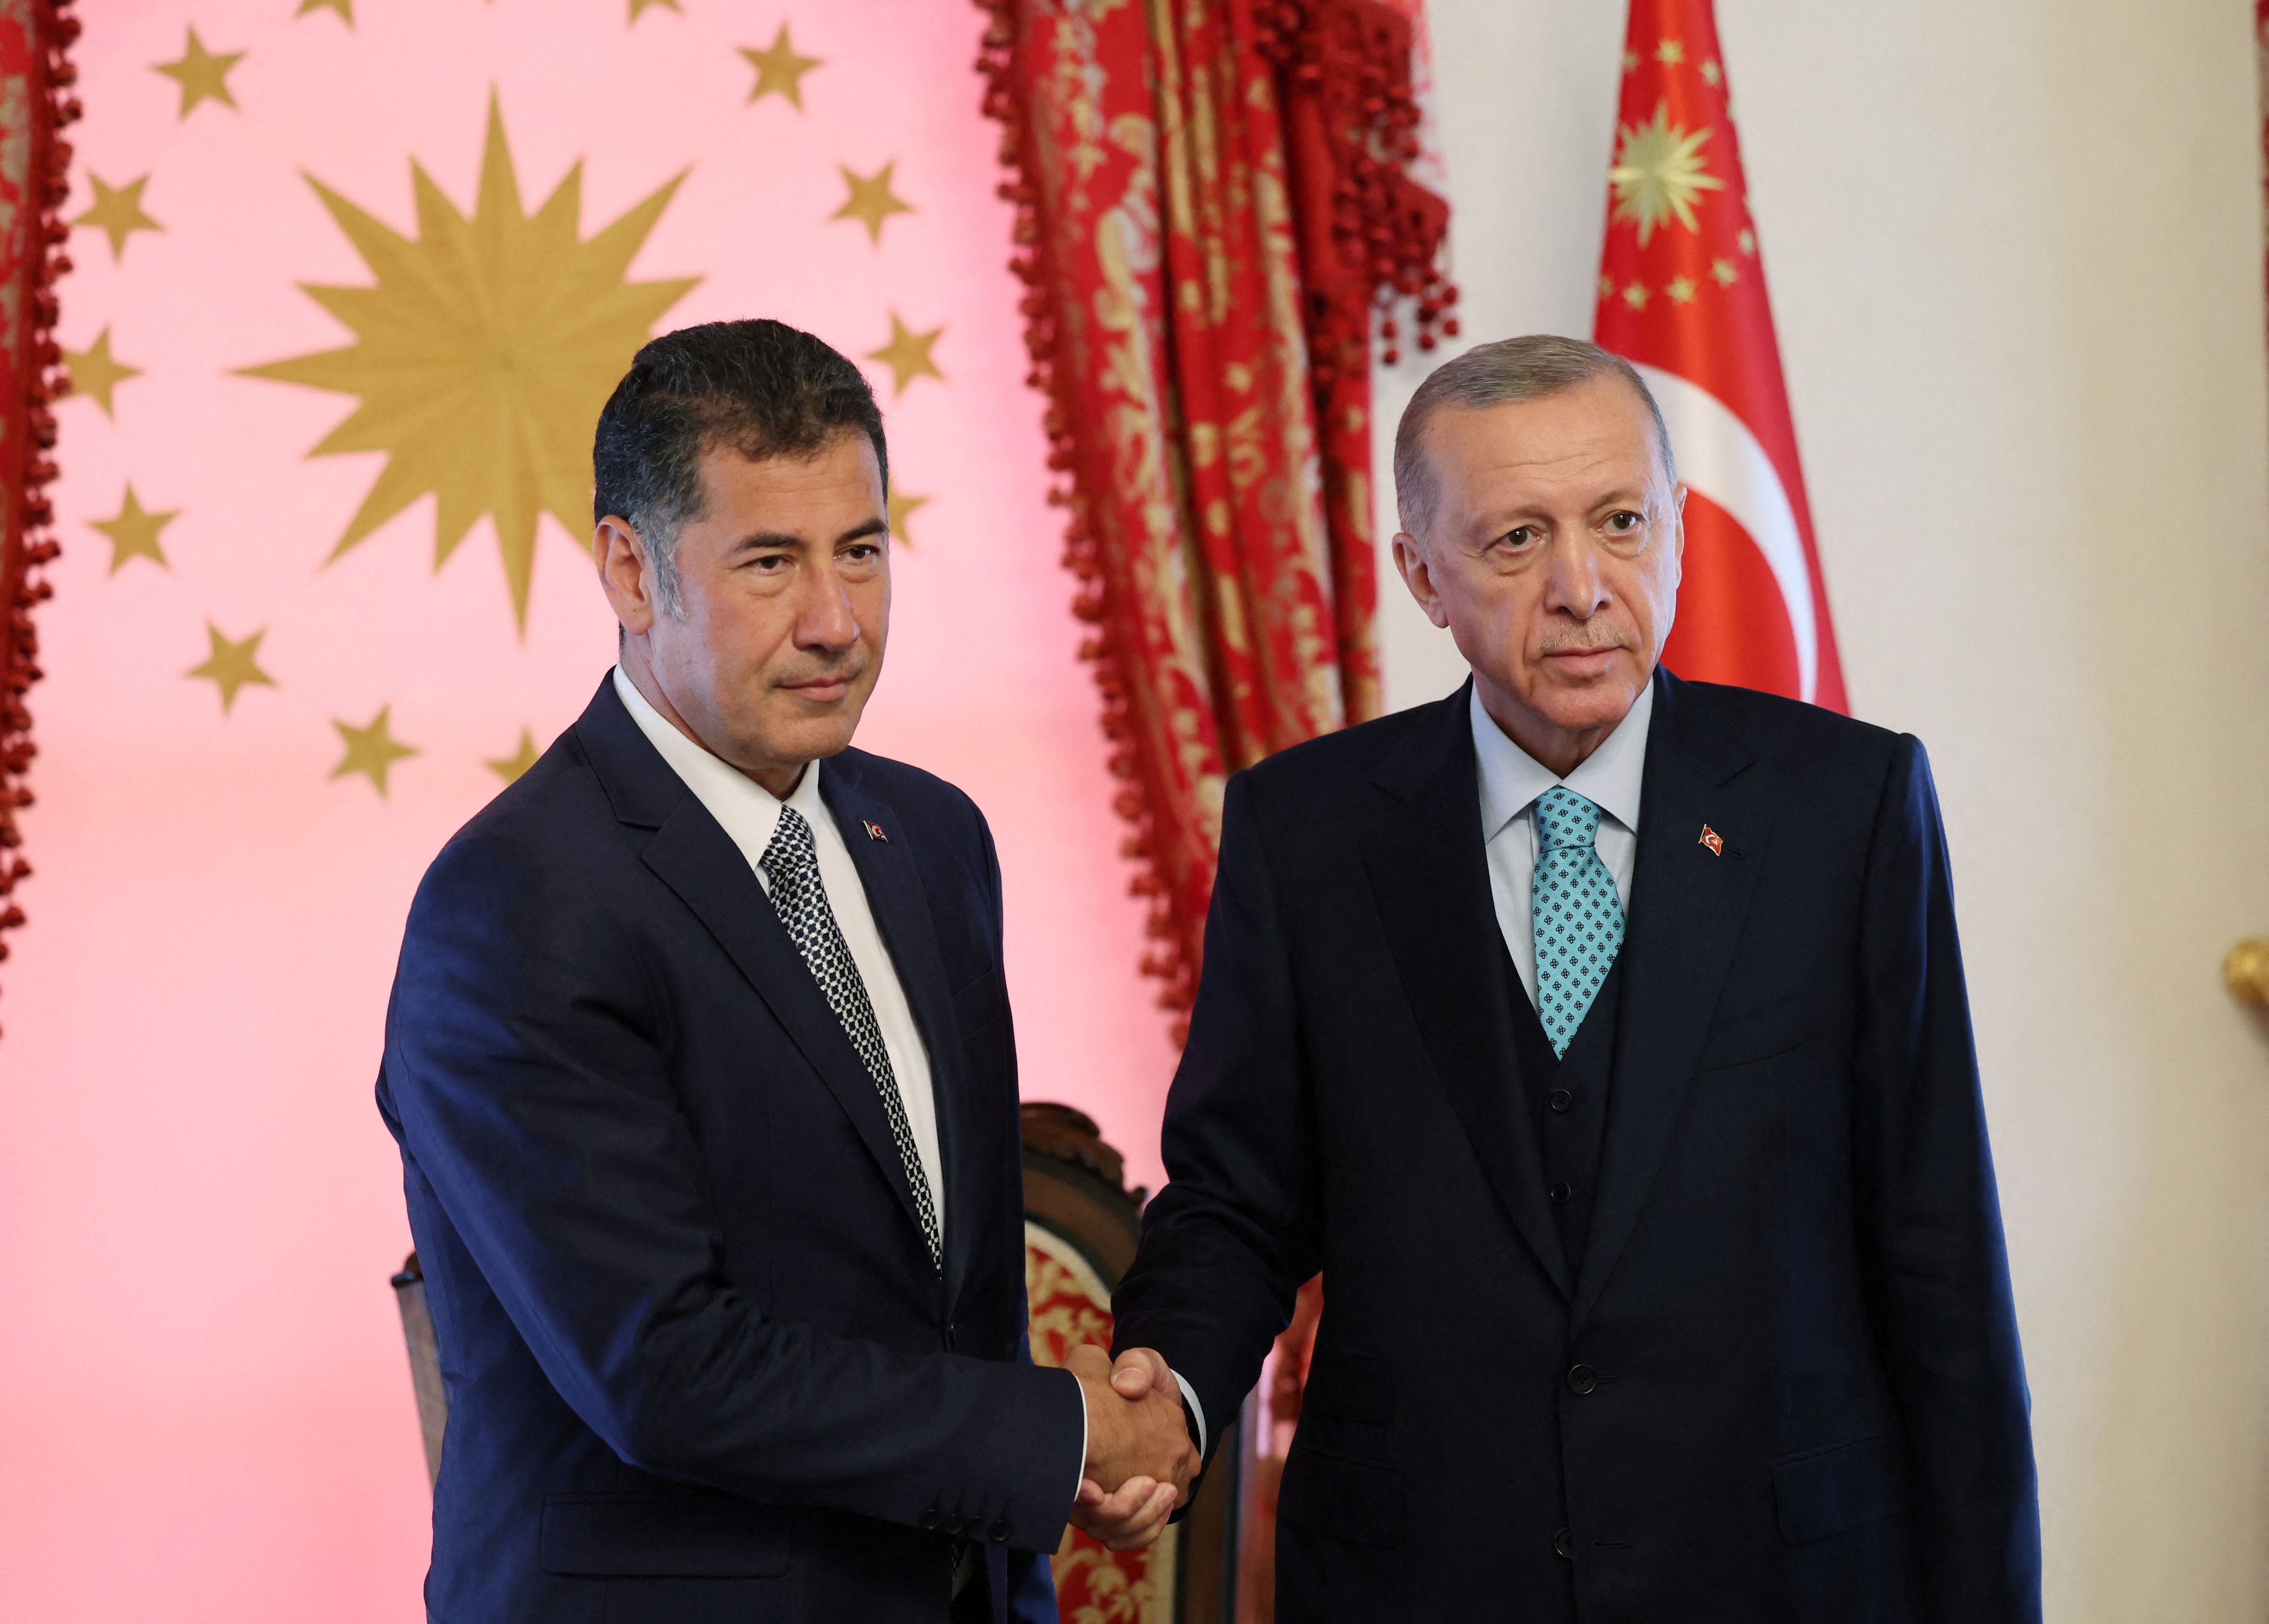 Εκλογές Τουρκία: «Ο Ογάν στήριξε τον Ερντογάν γιατί του έταξε κυβερνητική θέση» - Βγήκαν τα «μαχαίρια» στη συμμαχία ΑΤΑ